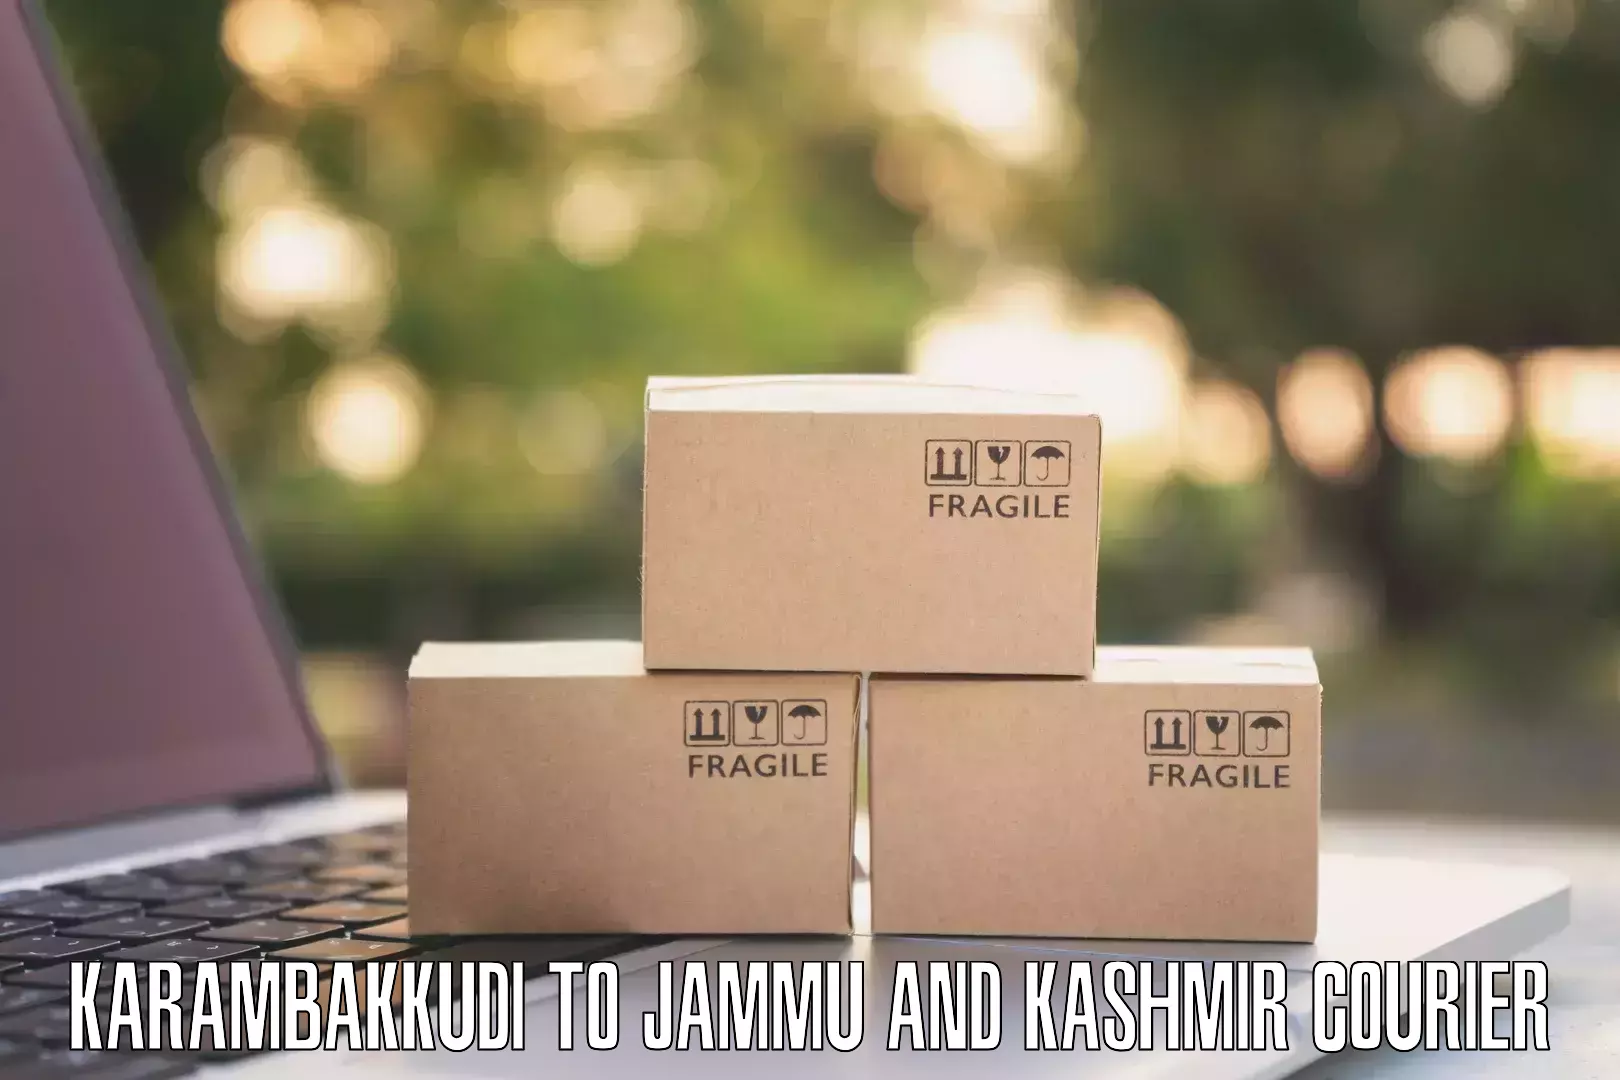 Discounted shipping Karambakkudi to Ramban